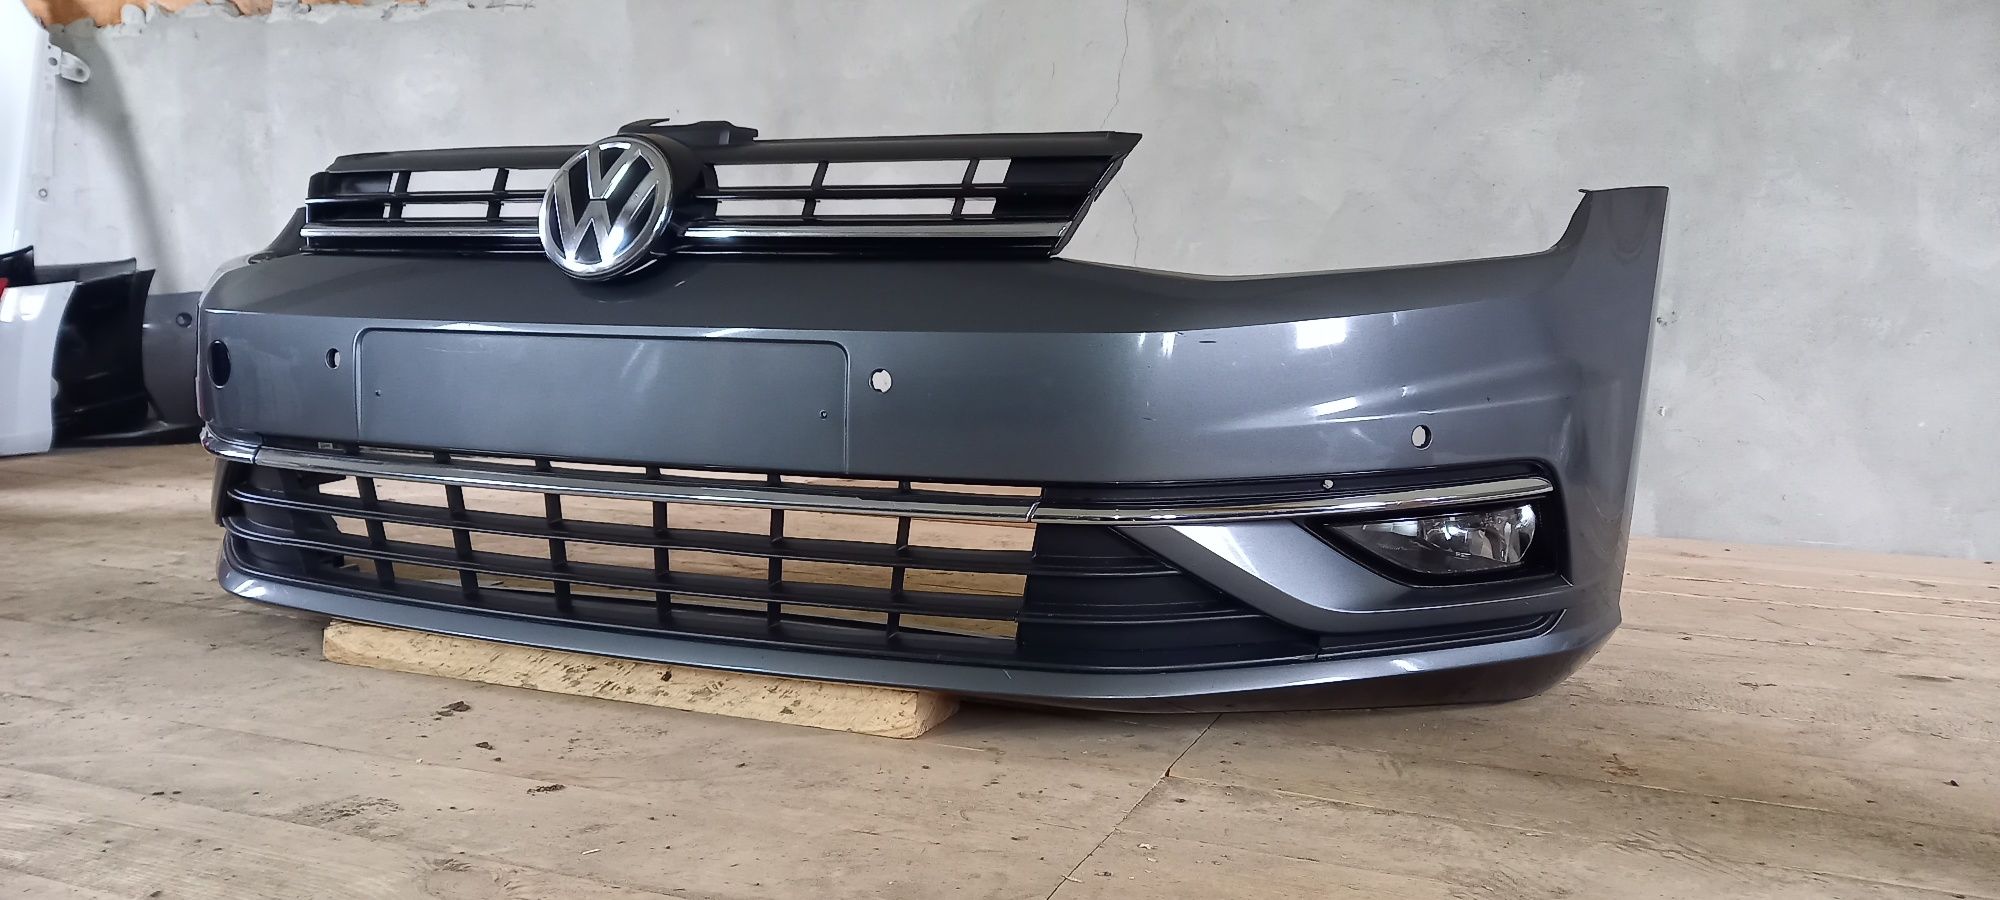 Бампер Volkswagen VW Golf 7 7.5 USA Europa 2017-2021 р.